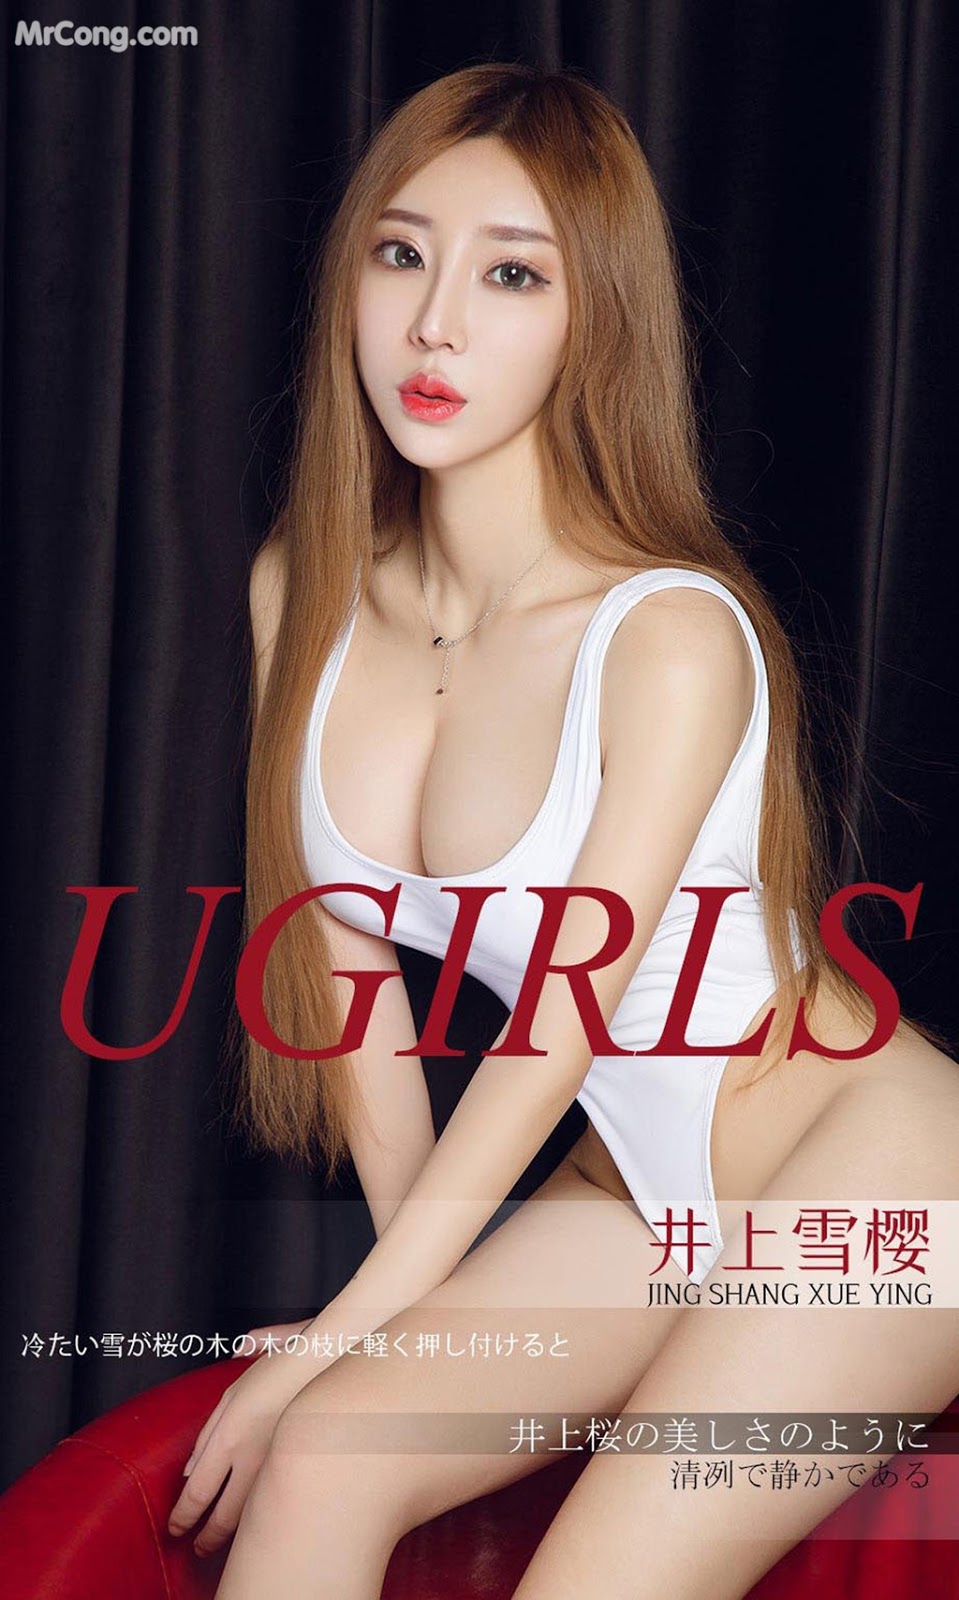 UGIRLS - Ai You Wu App No.1296: Model Jing Shang Xue Ying (井上 雪 樱) (35 photos) photo 1-1